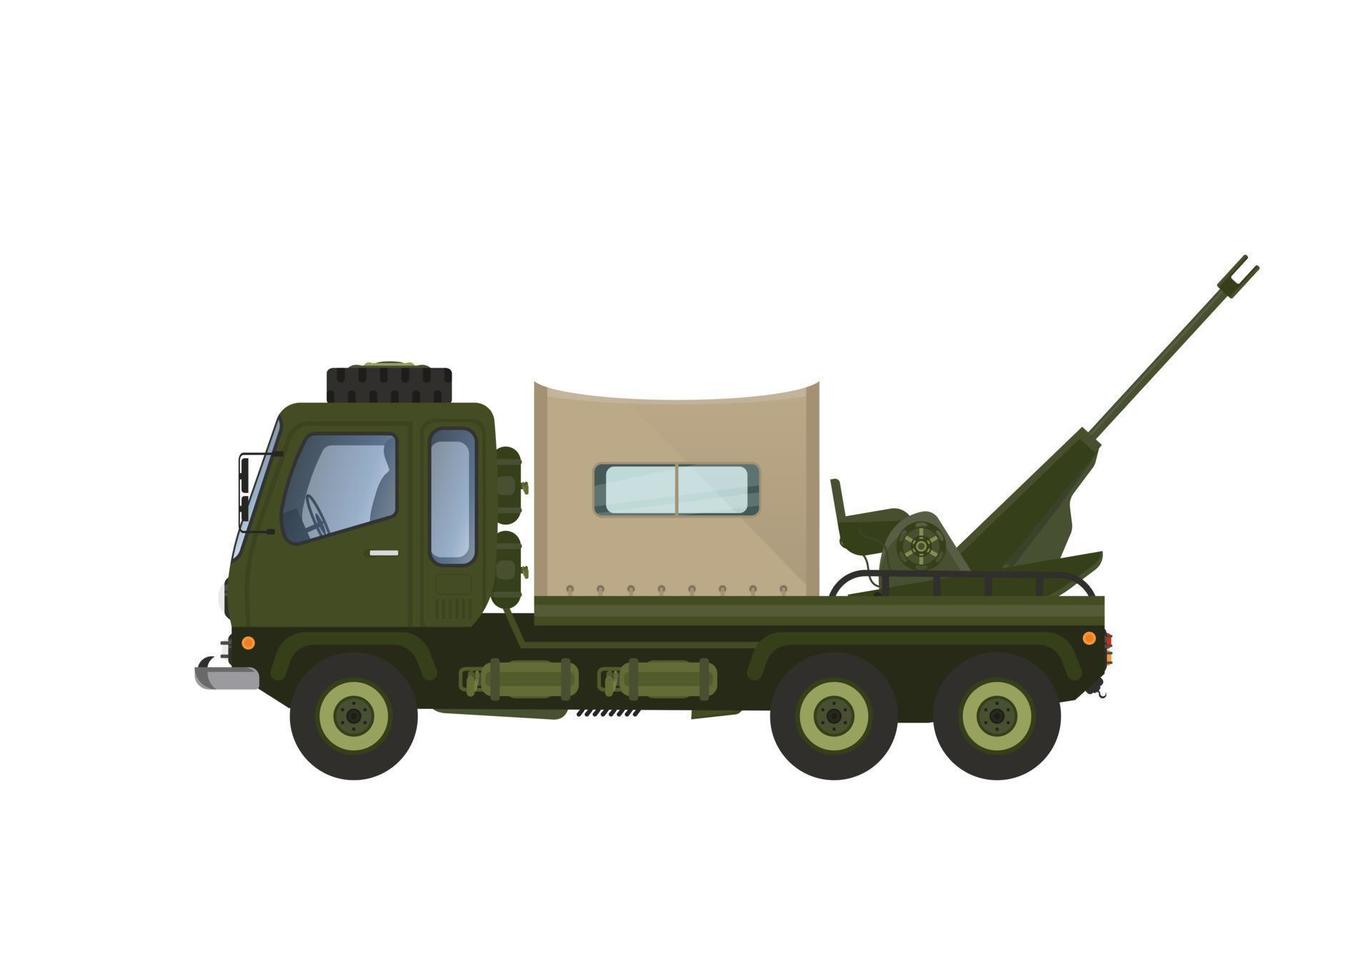 ilustração em vetor de carro lançador de mísseis militares. marcado com padrão de listras militares verdes. parece perspectiva. com um fundo branco, isolado.